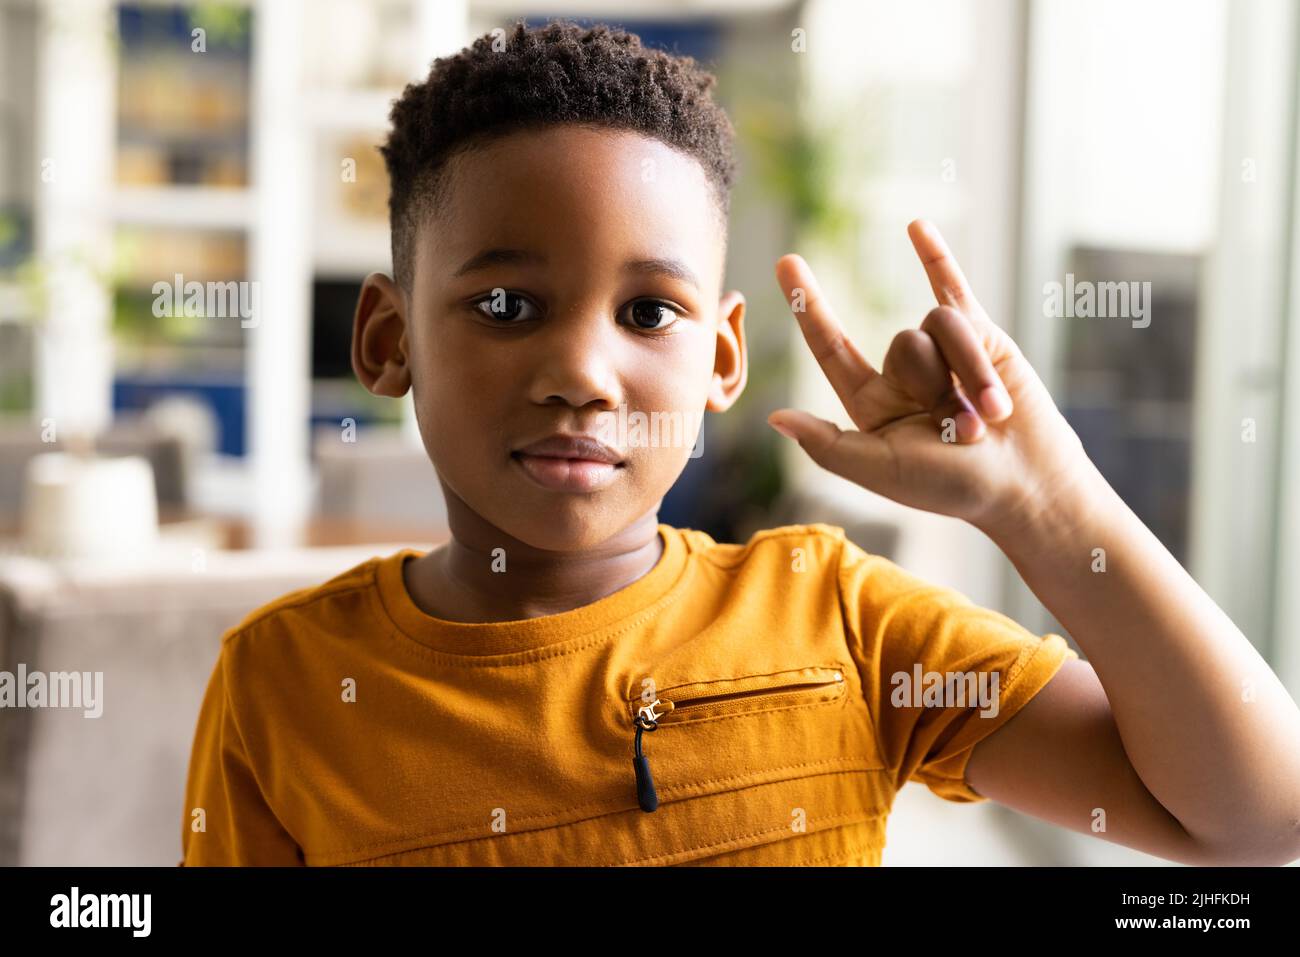 Image d'un garçon afro-américain souriant en utilisant la langue des signes Banque D'Images